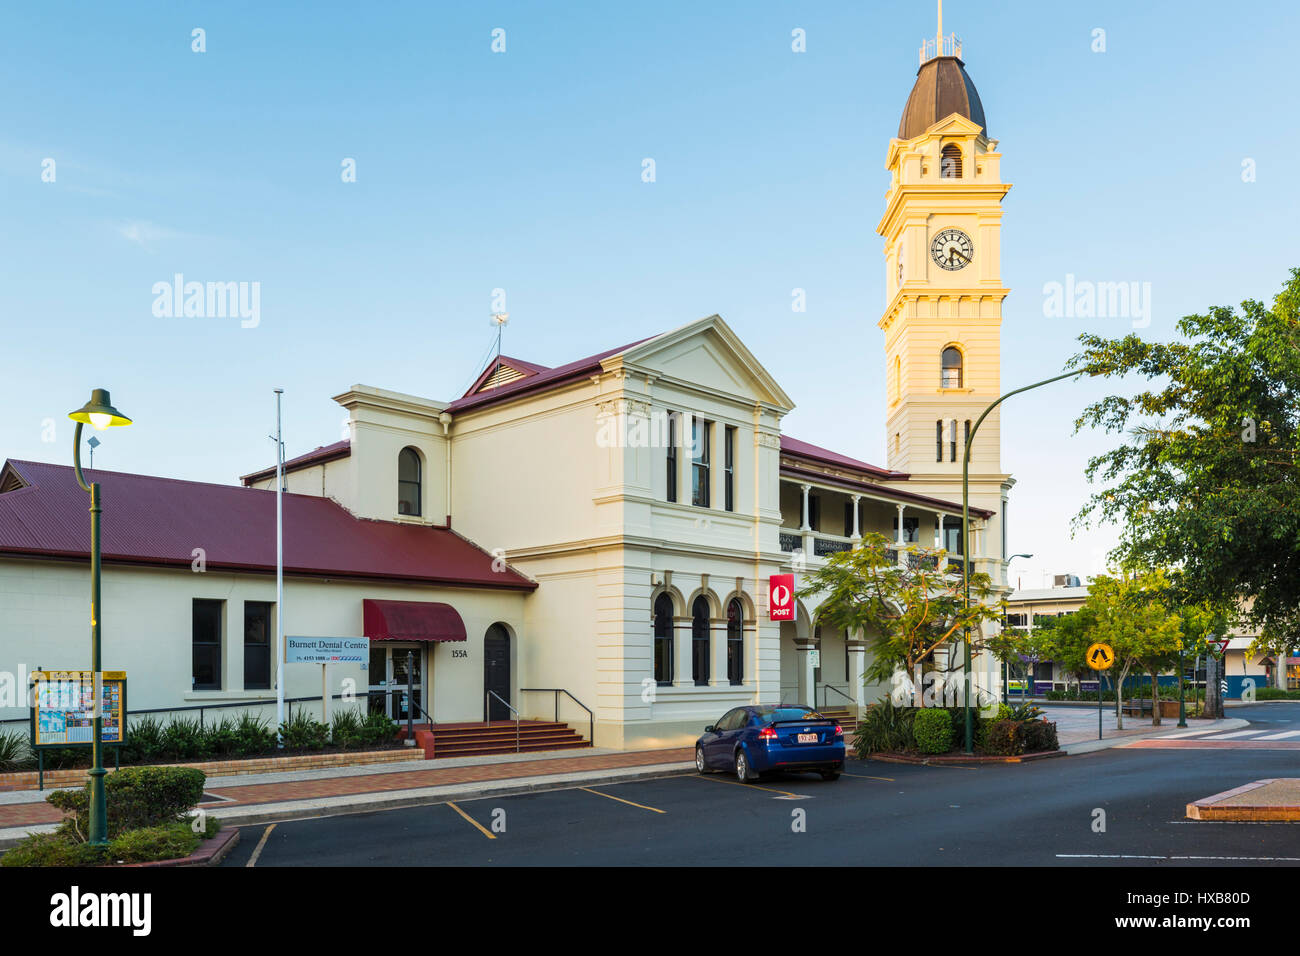 Le bureau de poste de Bundaberg et tour de l'horloge s'appuyant sur Bourbong Street. Bundaberg, Queensland, Australie Banque D'Images